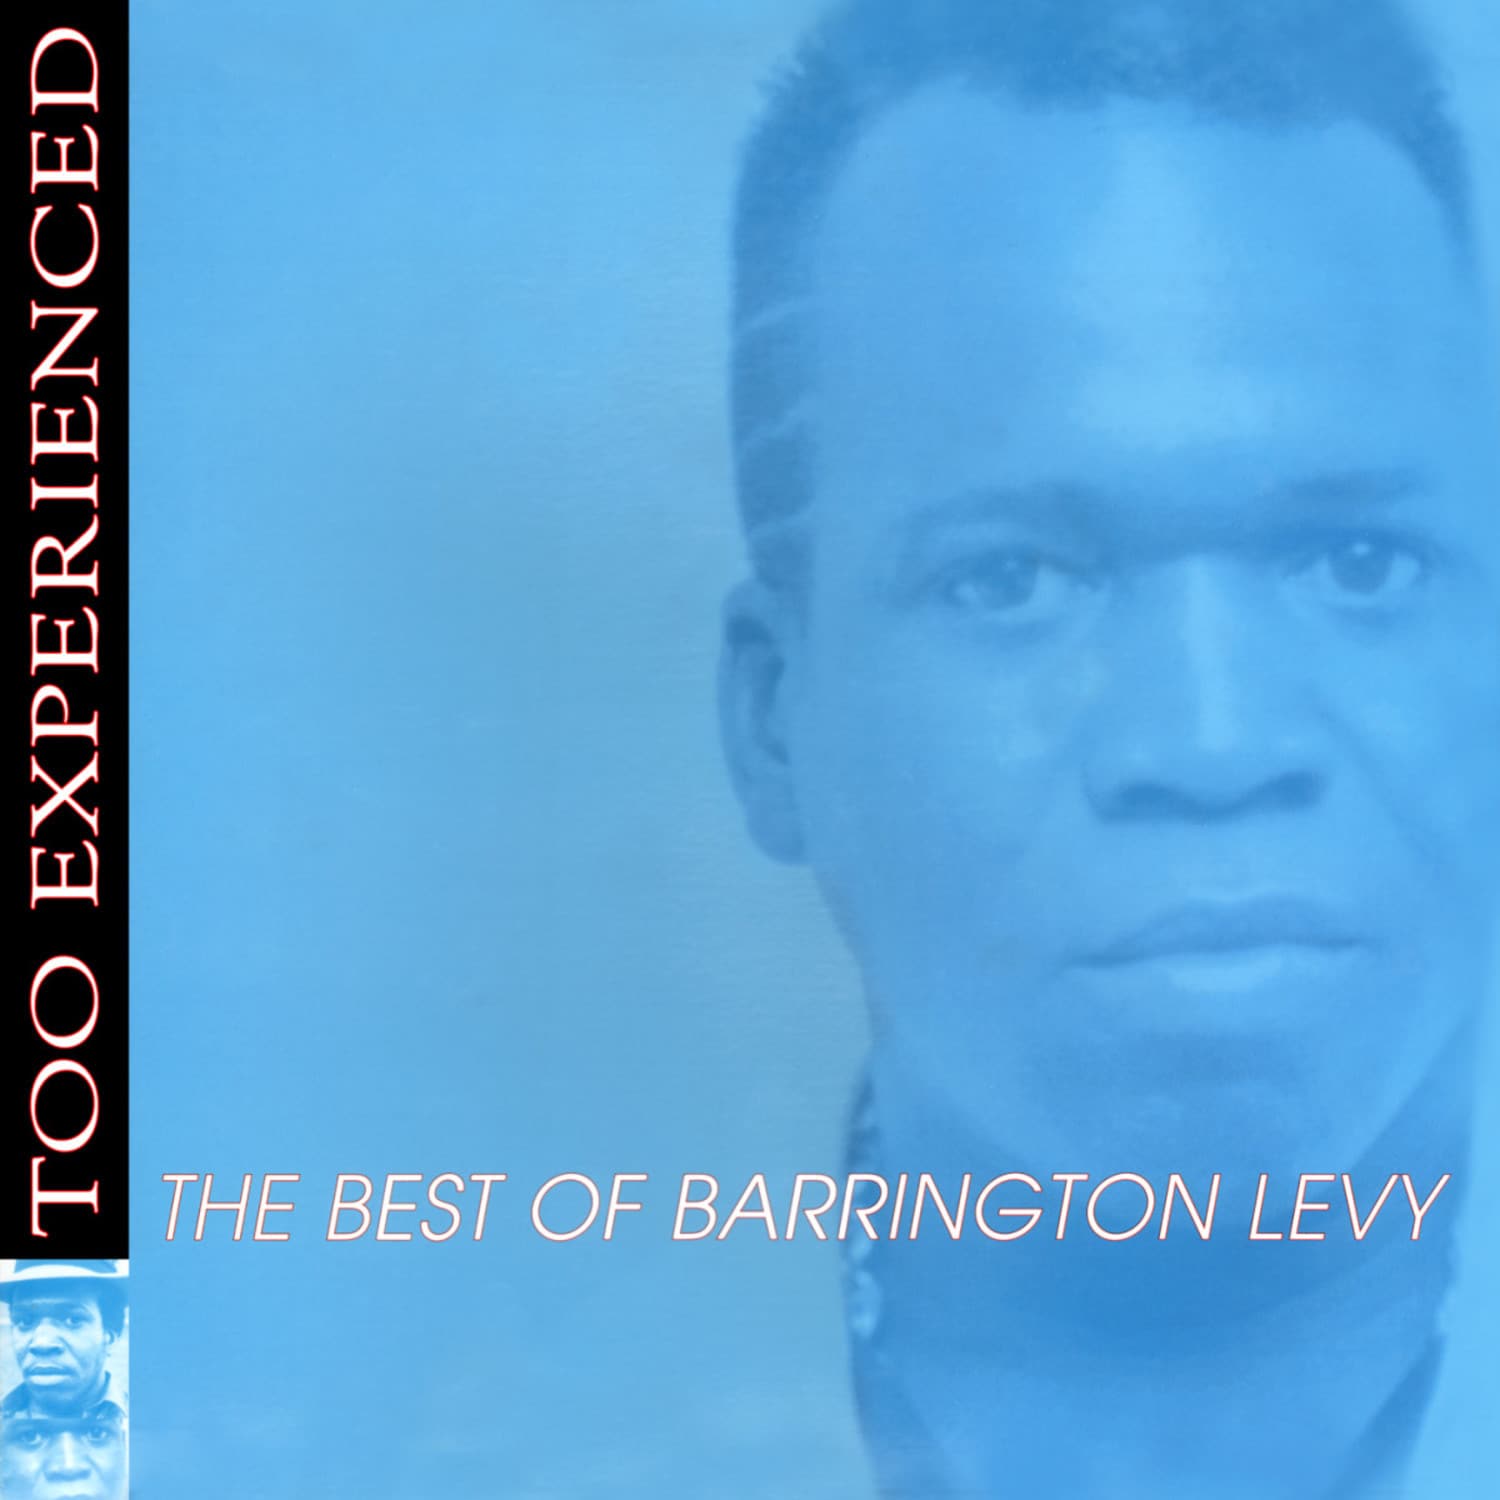 Barrington Levy - TOO EXPERIENCED-THE BEST OF BARRINGTON LEVY 